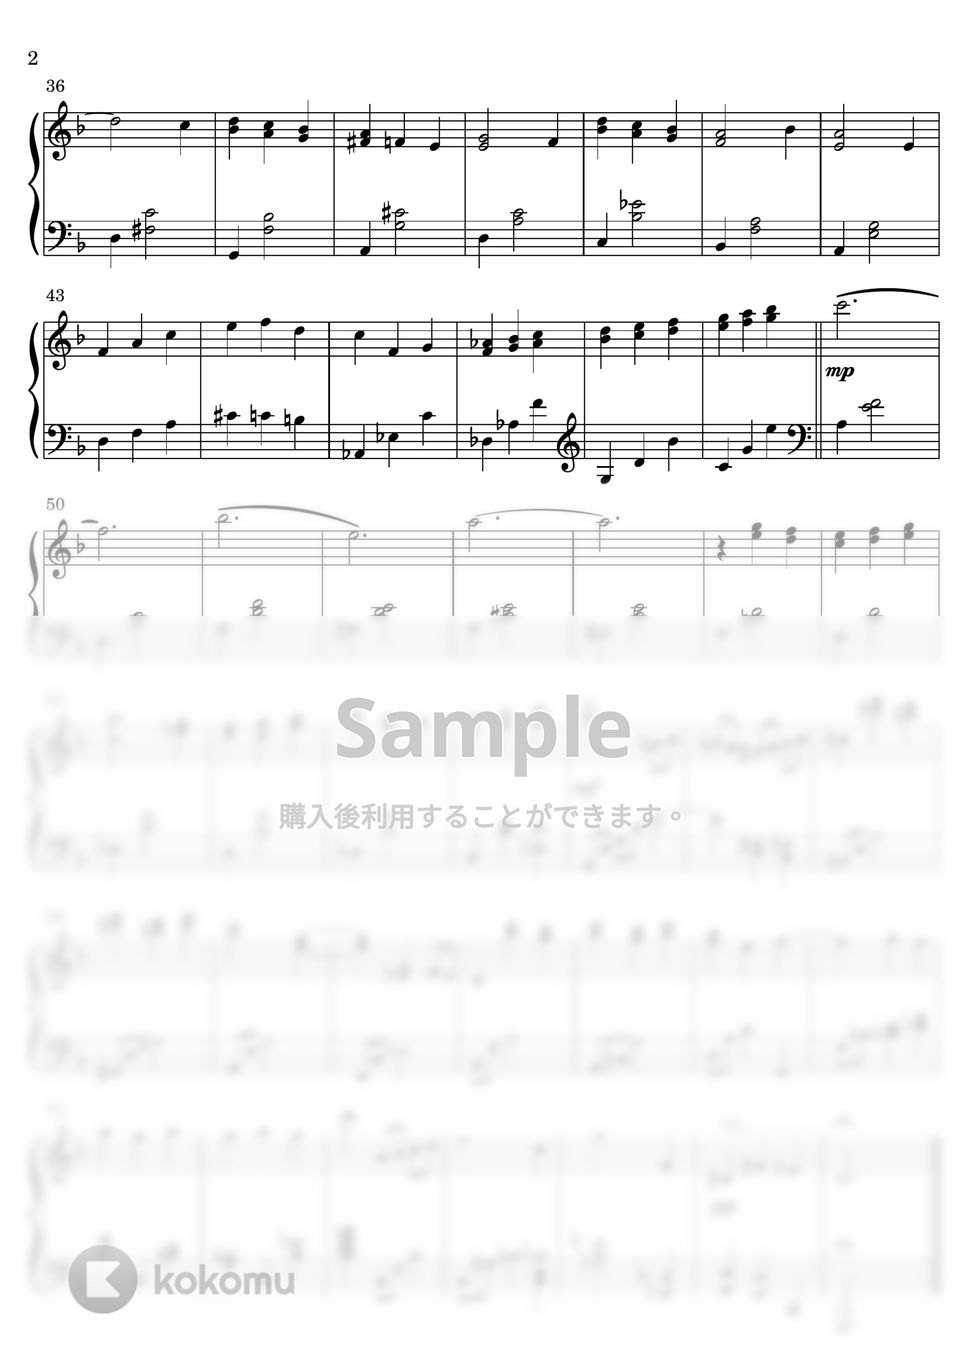 ビル・エヴァンス - Waltz For Debby /ワルツ・フォー・デビー (ピアノソロ) by Miz